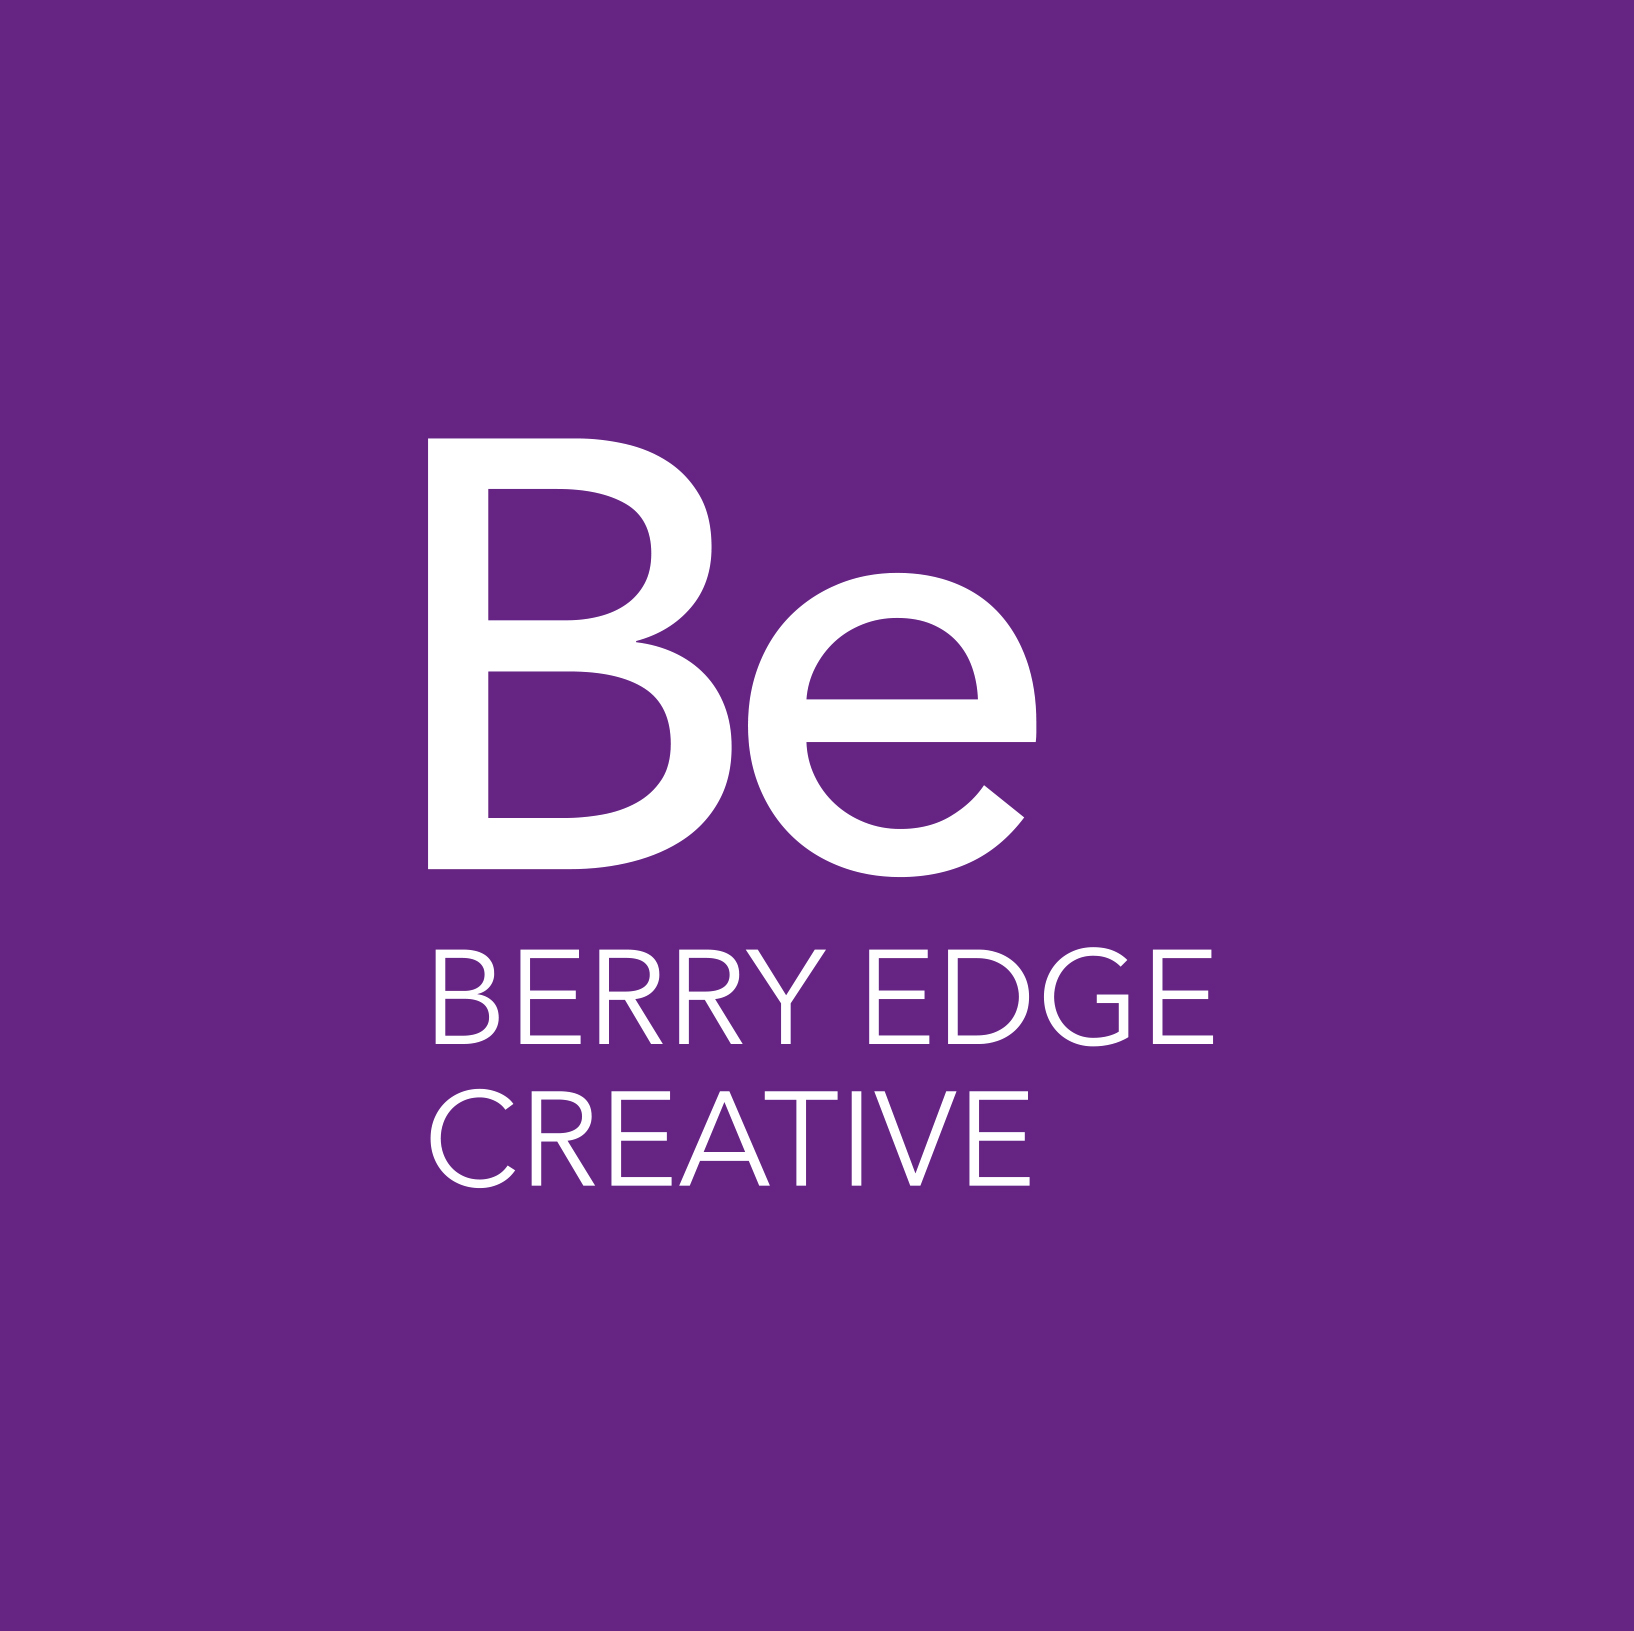 Berry Edge Creative